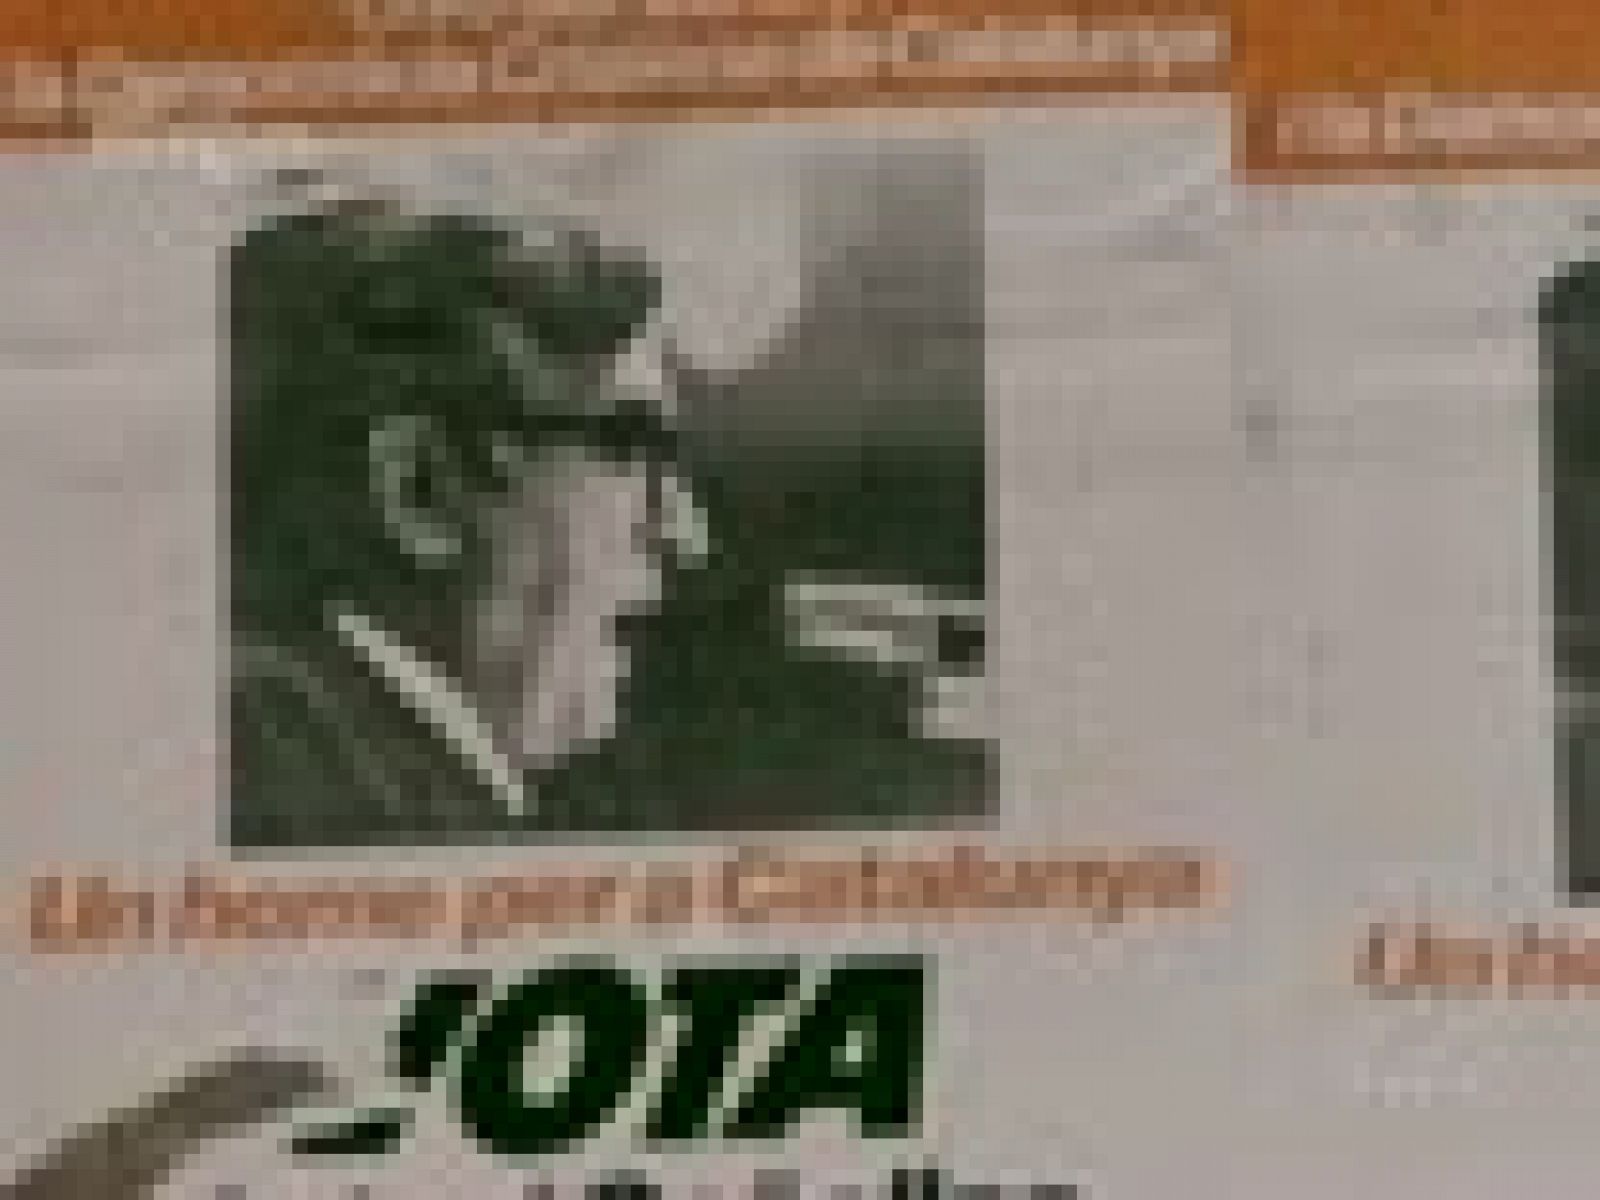 NODO - Noticiario especial dedicado a las primeras elecciones en democracia (15/06/1977)